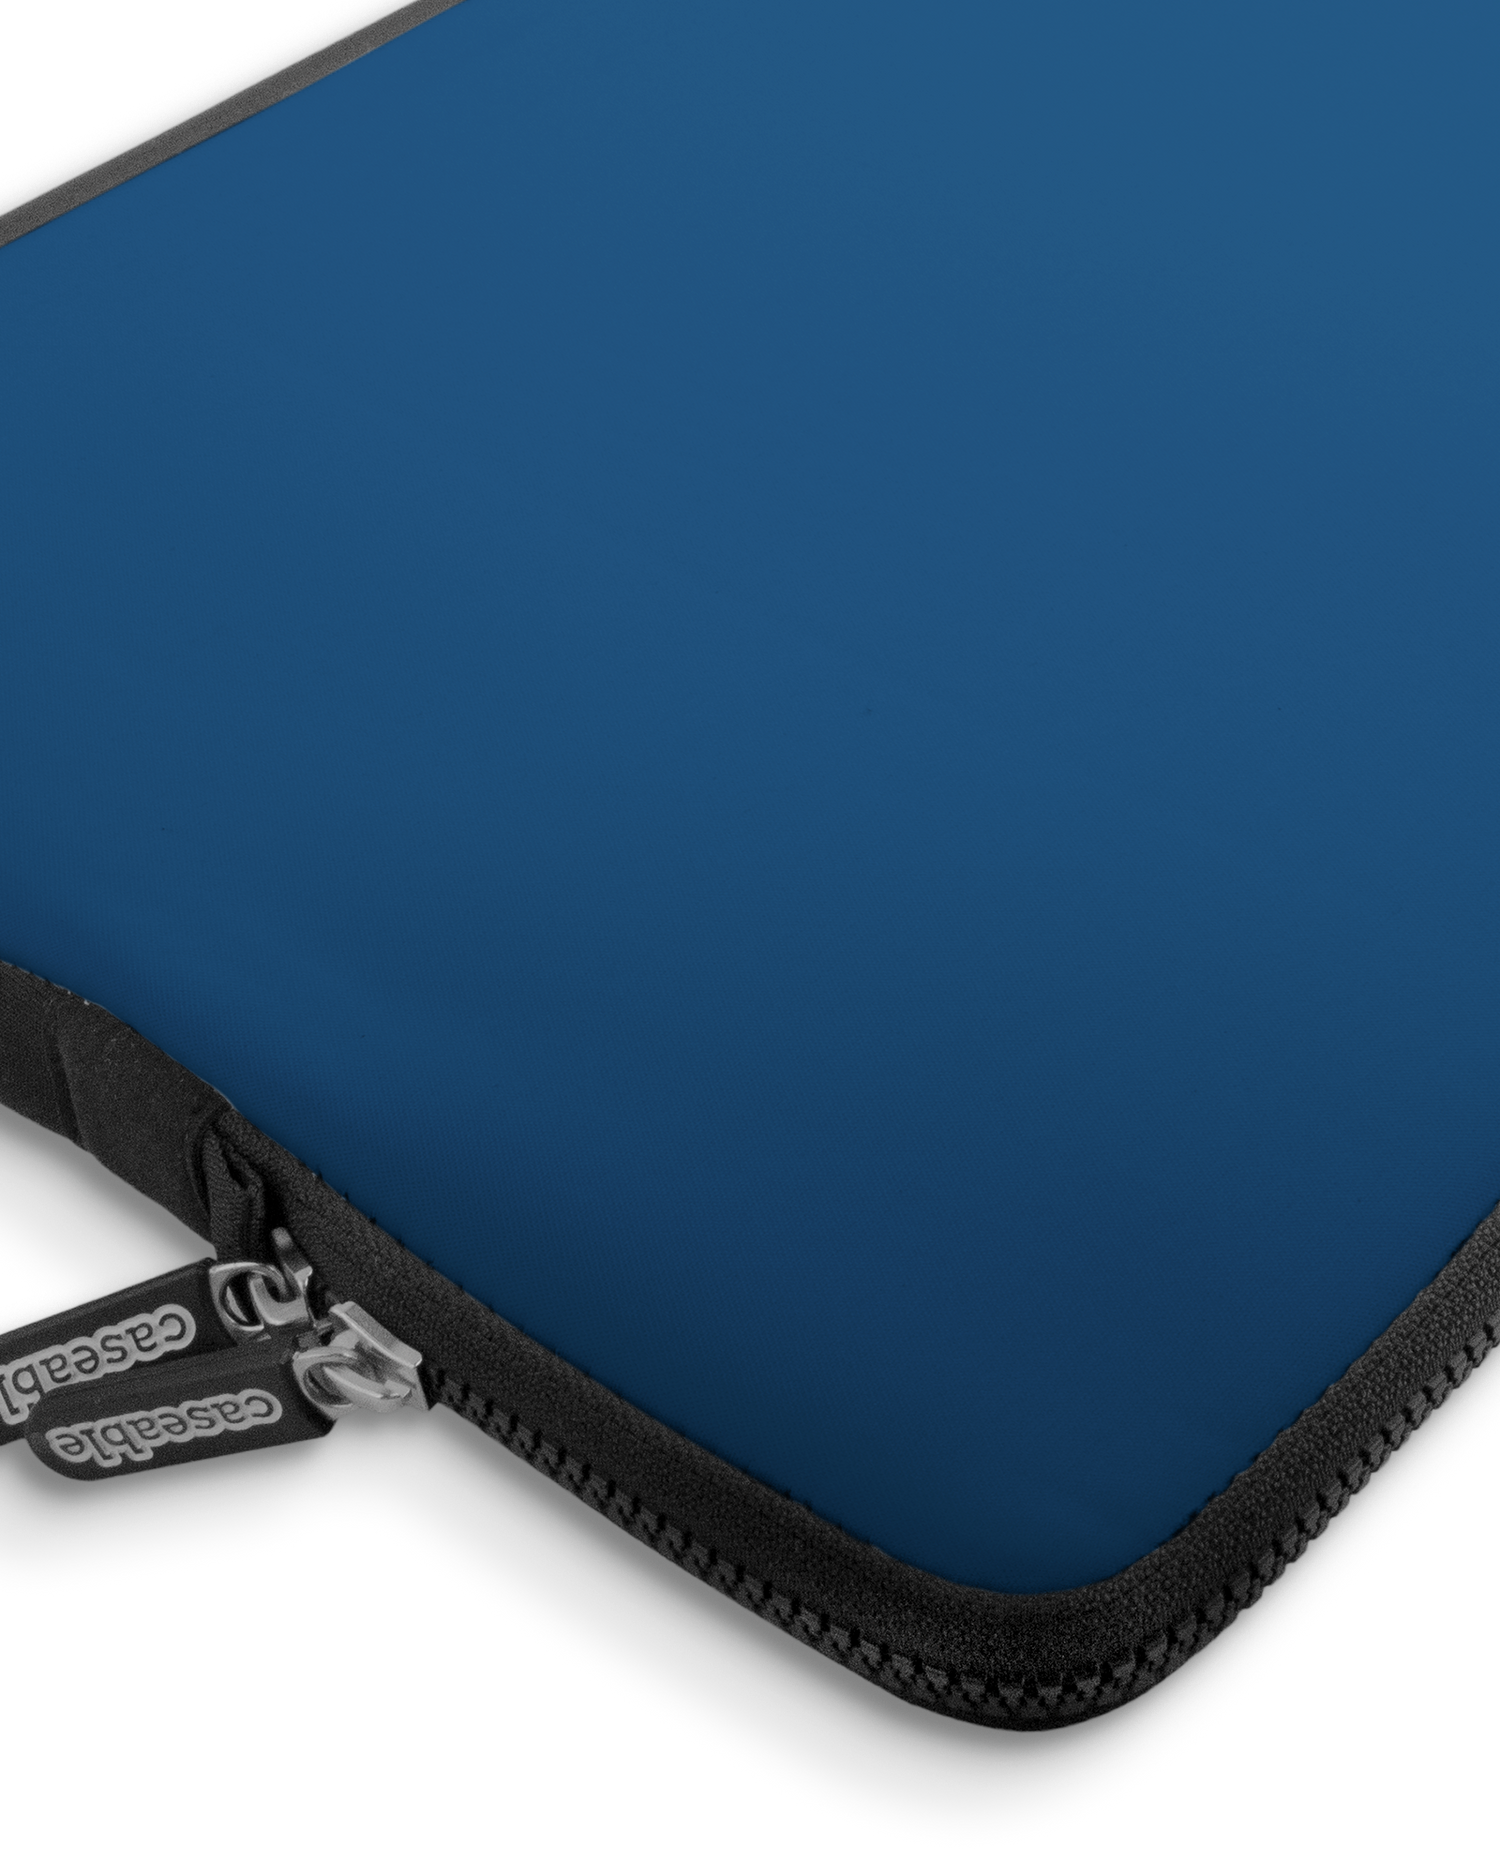 CLASSIC BLUE Premium Laptoptasche 17 Zoll mit Gerät im Inneren